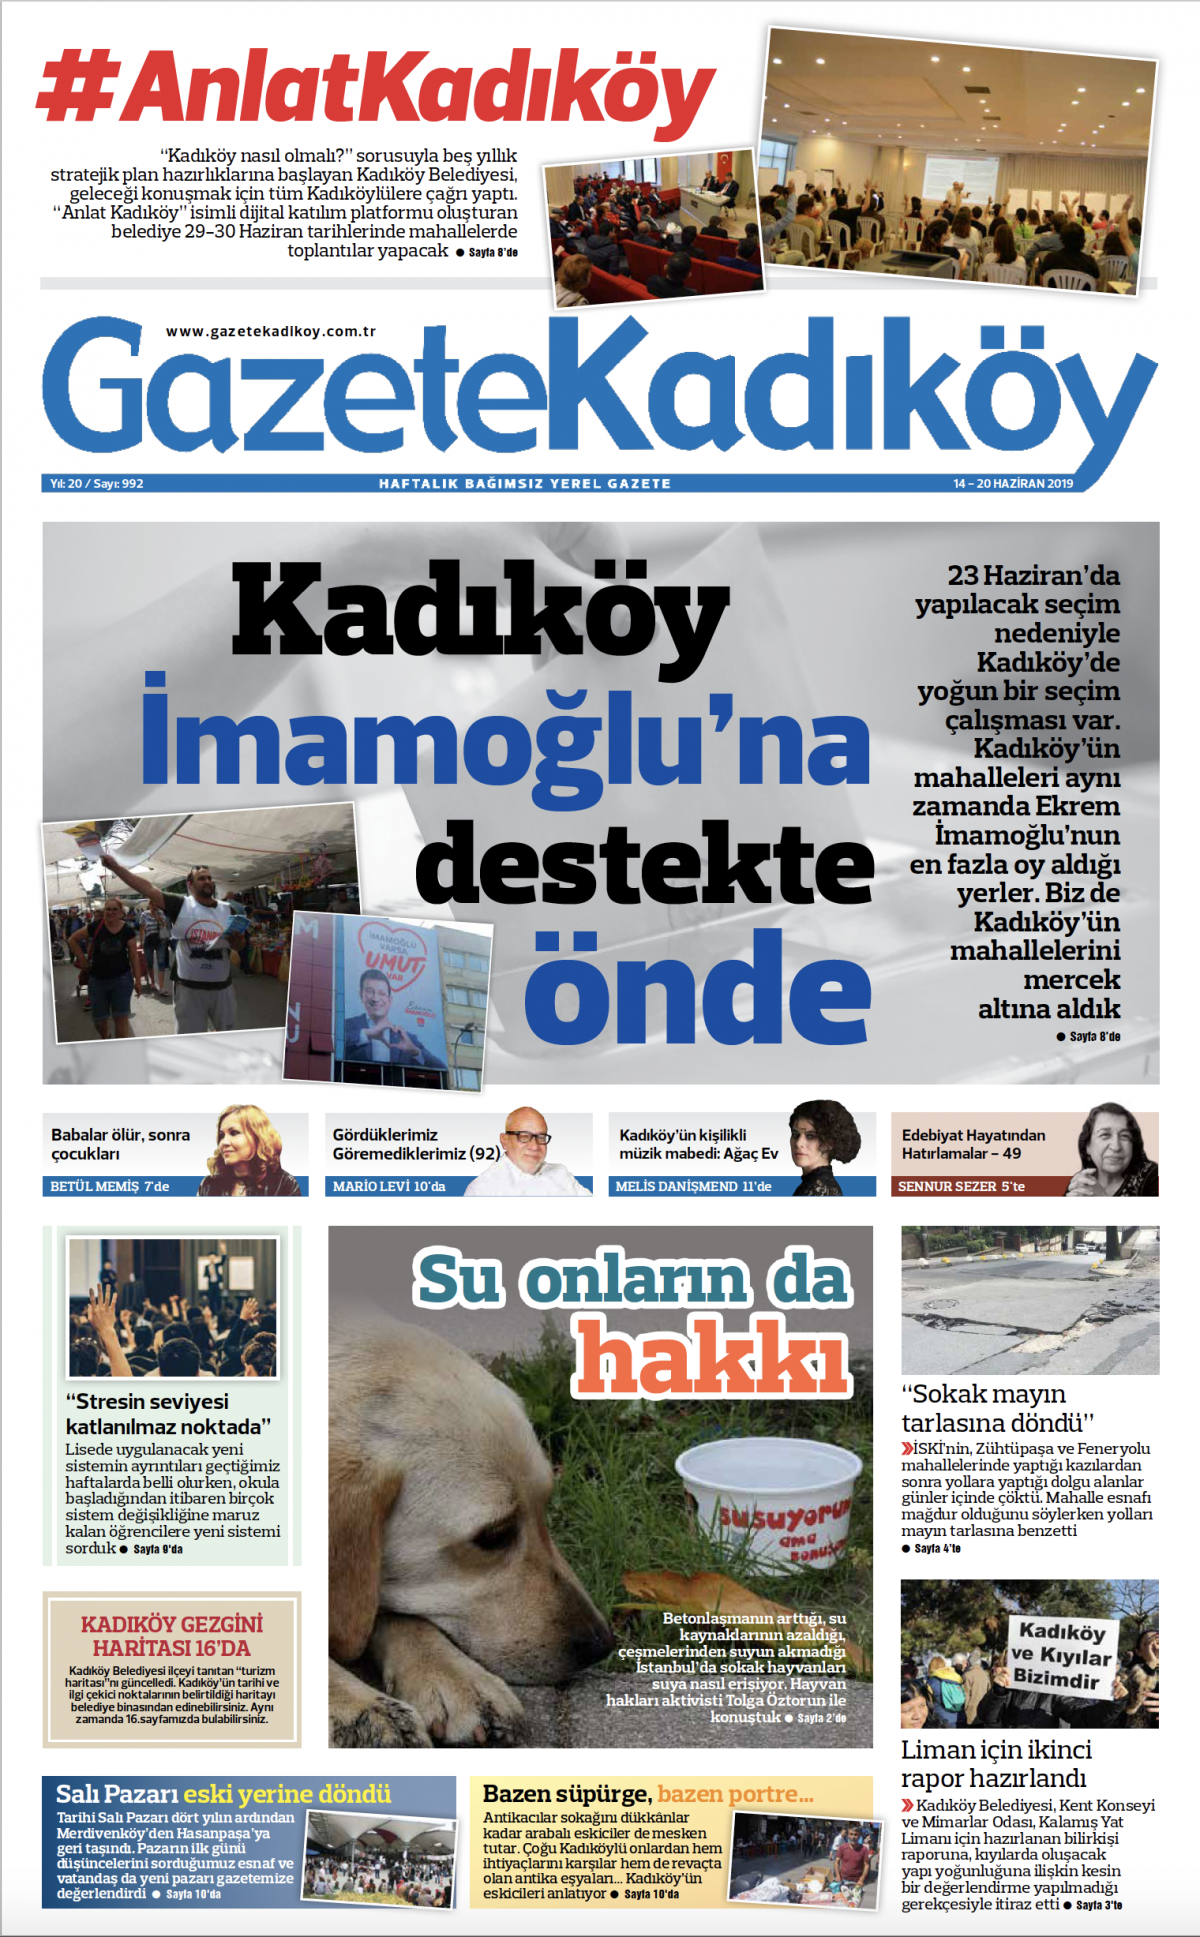 Gazete Kadıköy - 992. Sayı